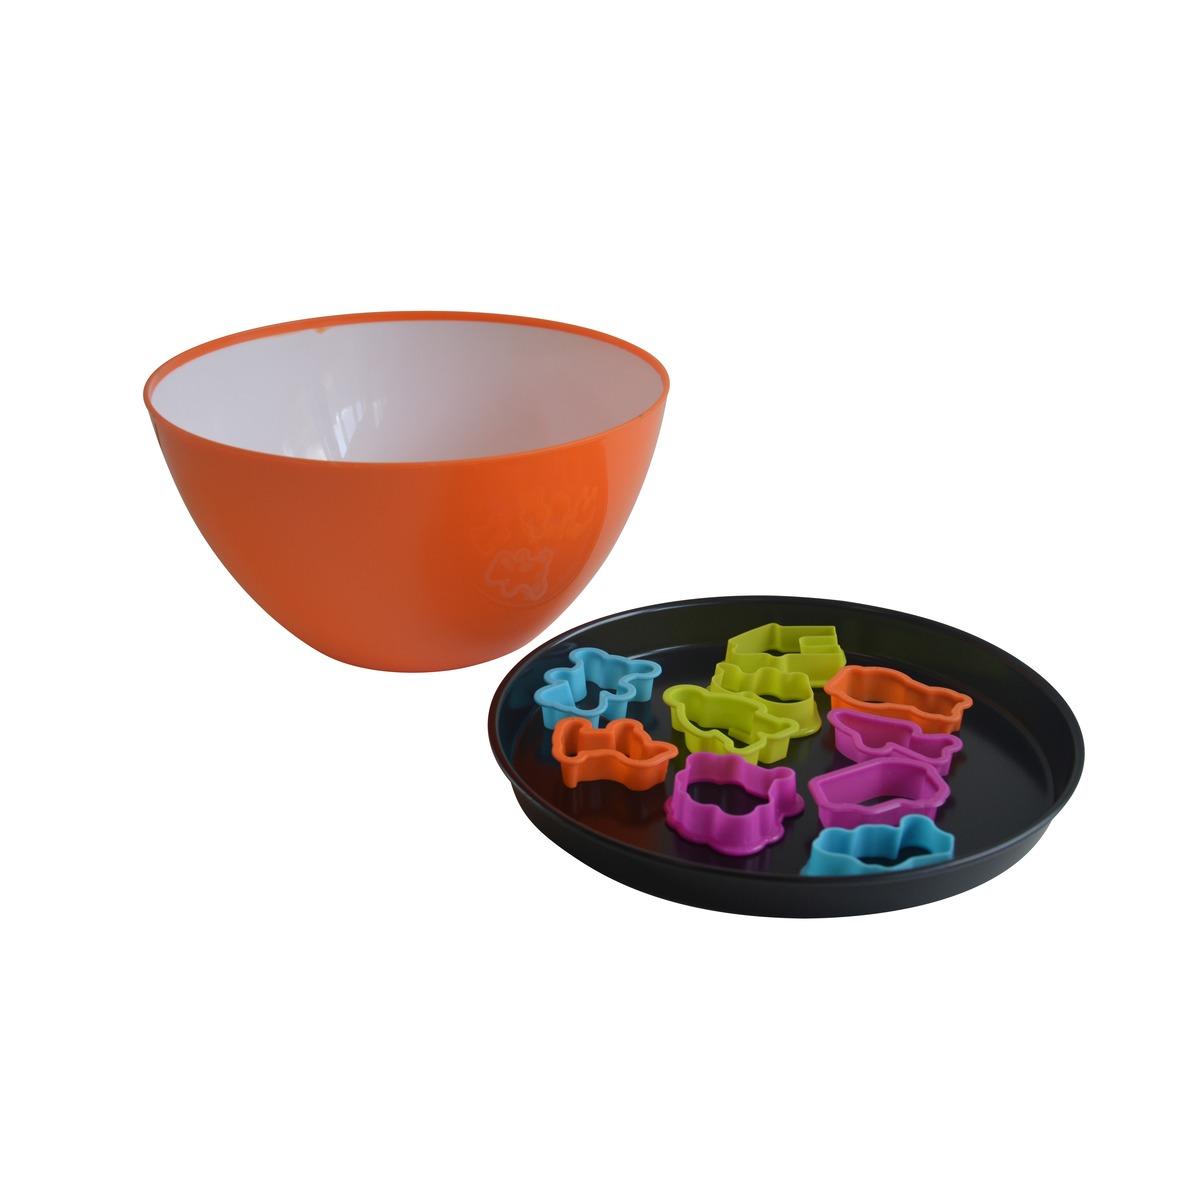 Set à pâtisserie enfant avec bol mélangeur, emporte-pièces et plaque de cuisson - orange